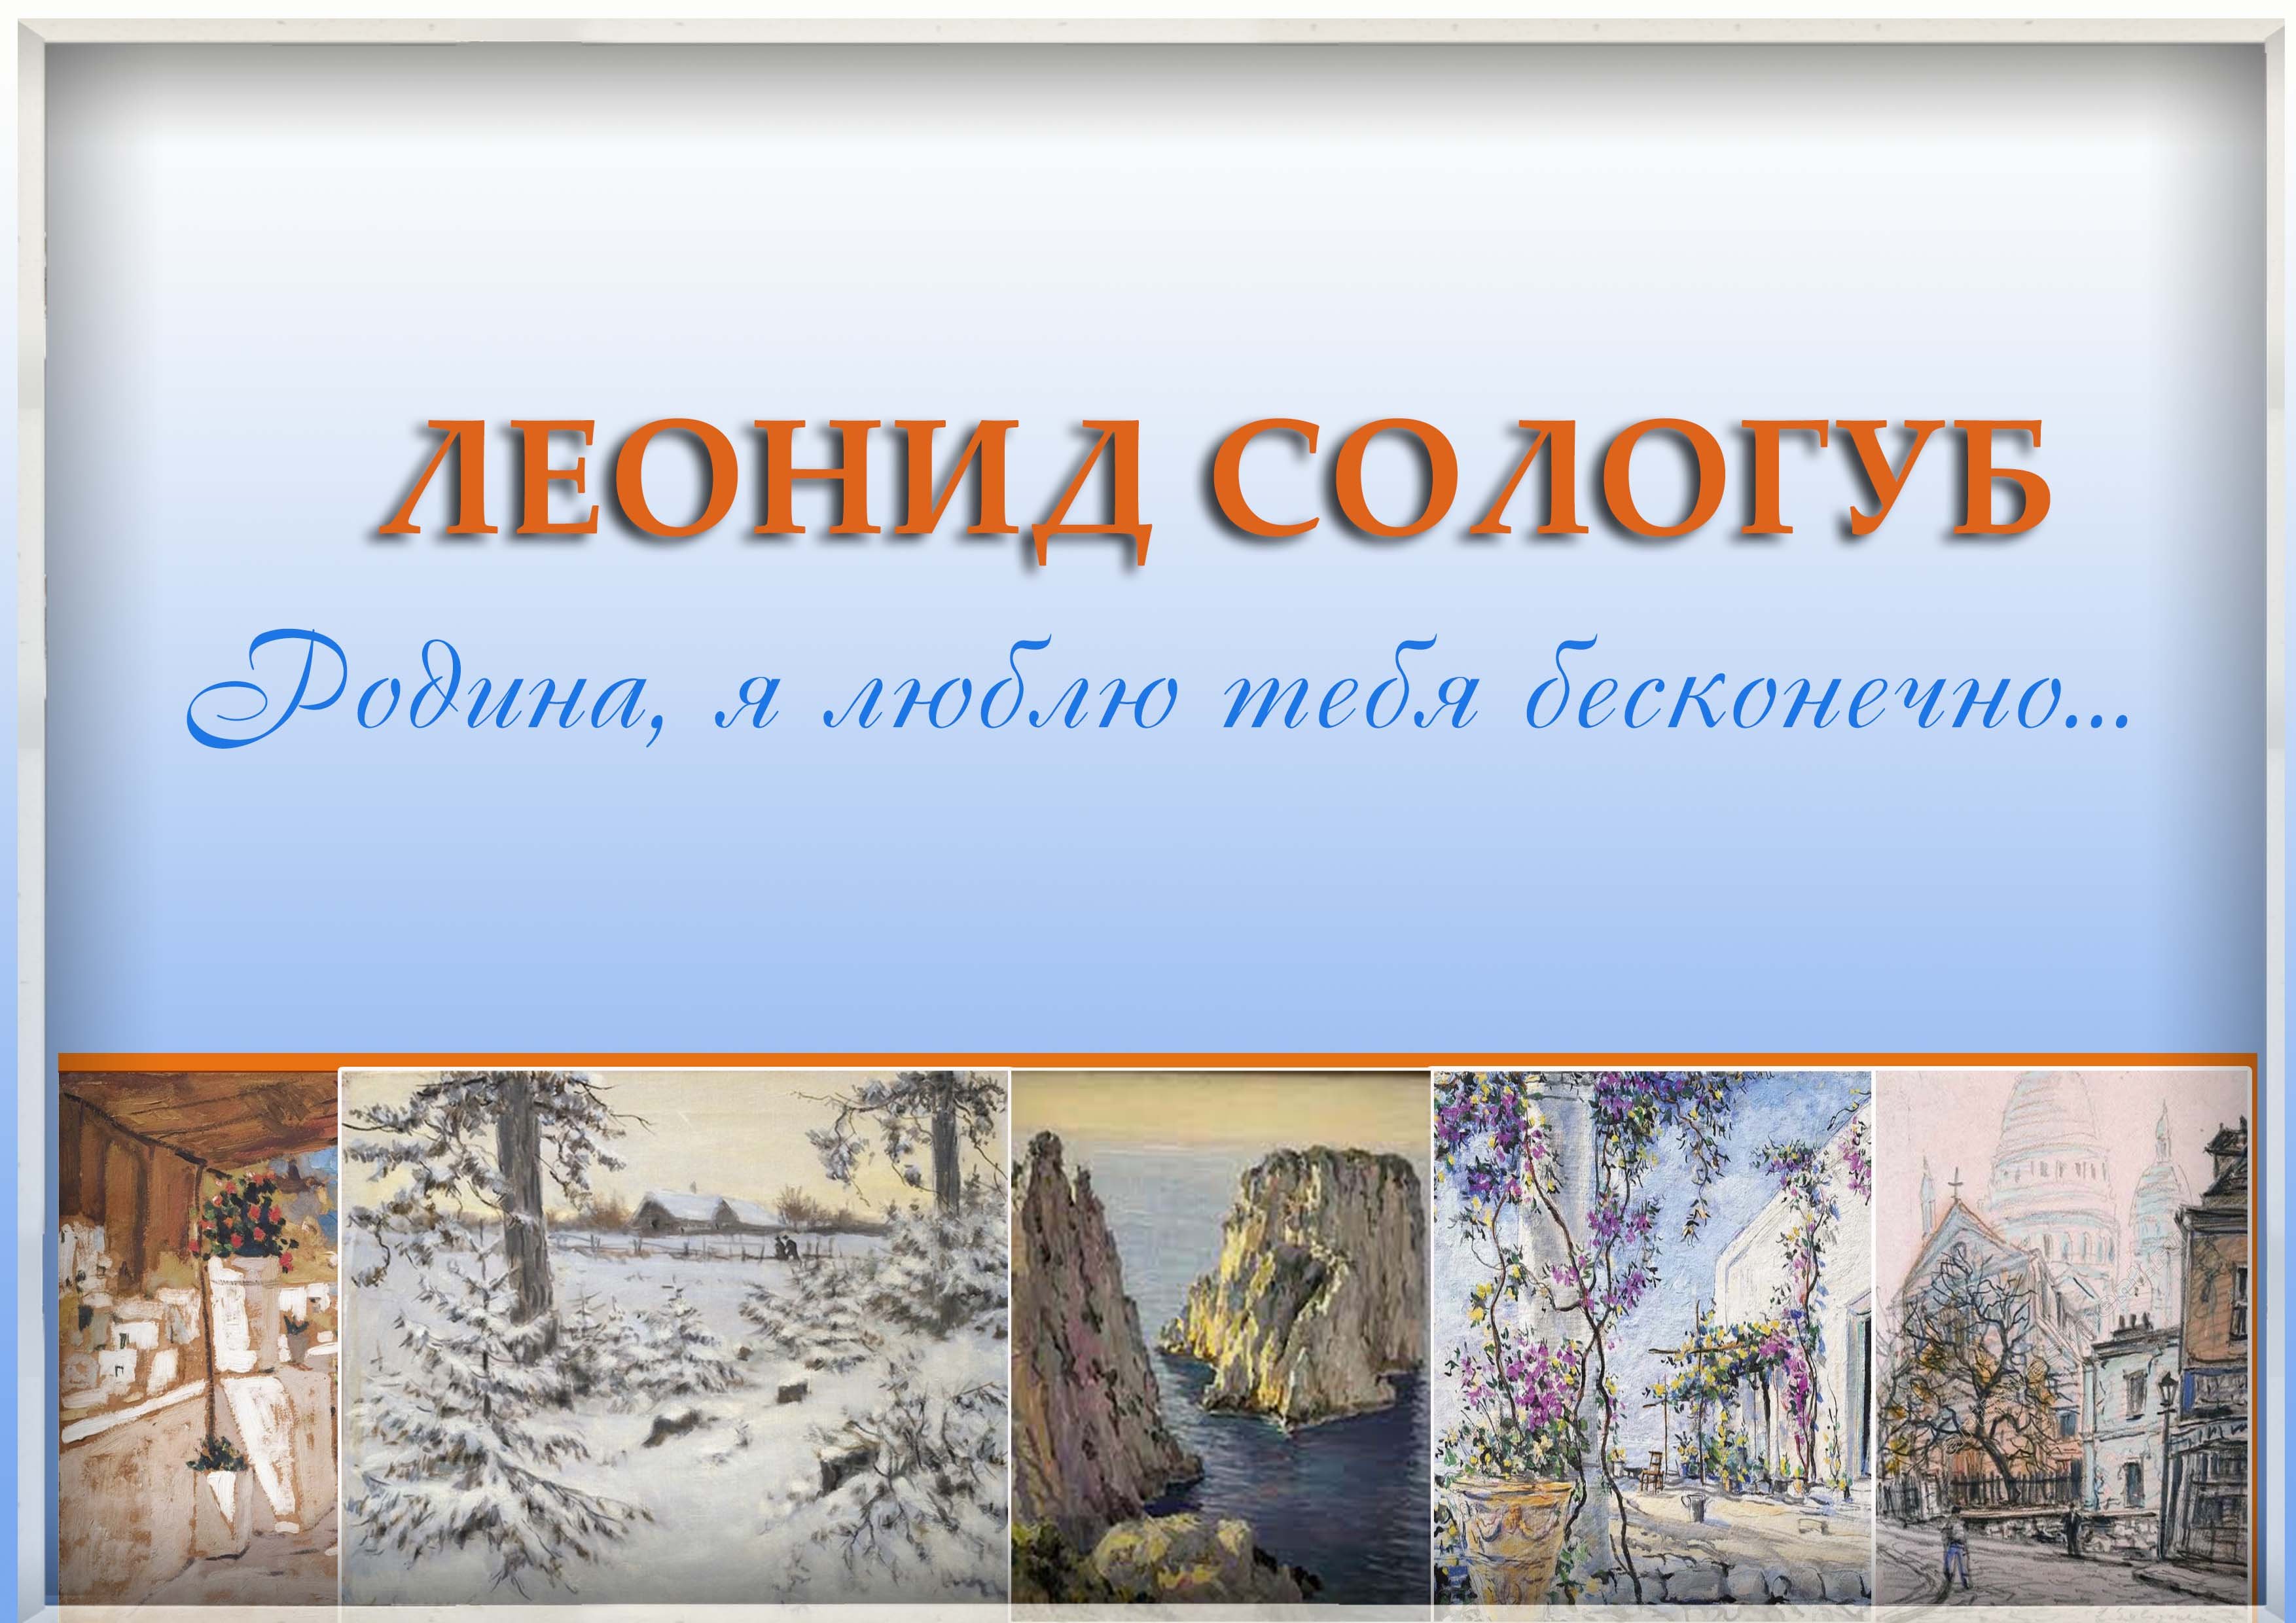 Видеосюжет к 140 - летию со дня рождения художника - архитектора Леонида Романовича Сологуба.